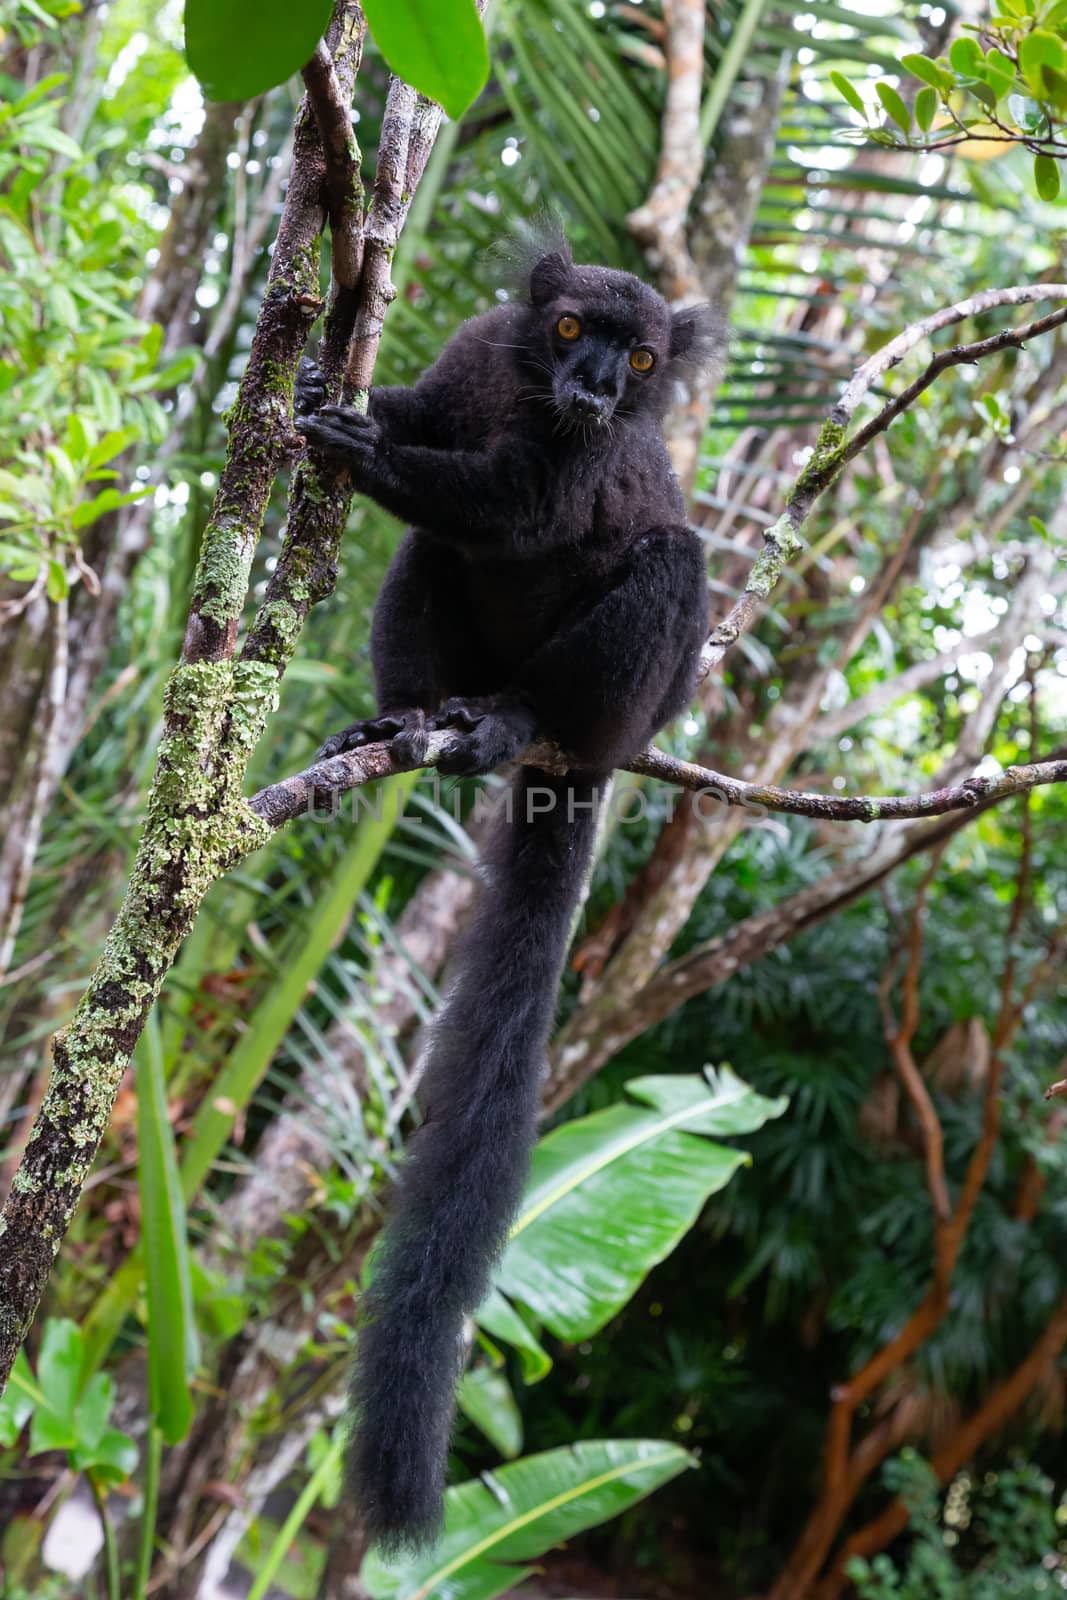 A black lemur on a tree awaiting a banana by 25ehaag6